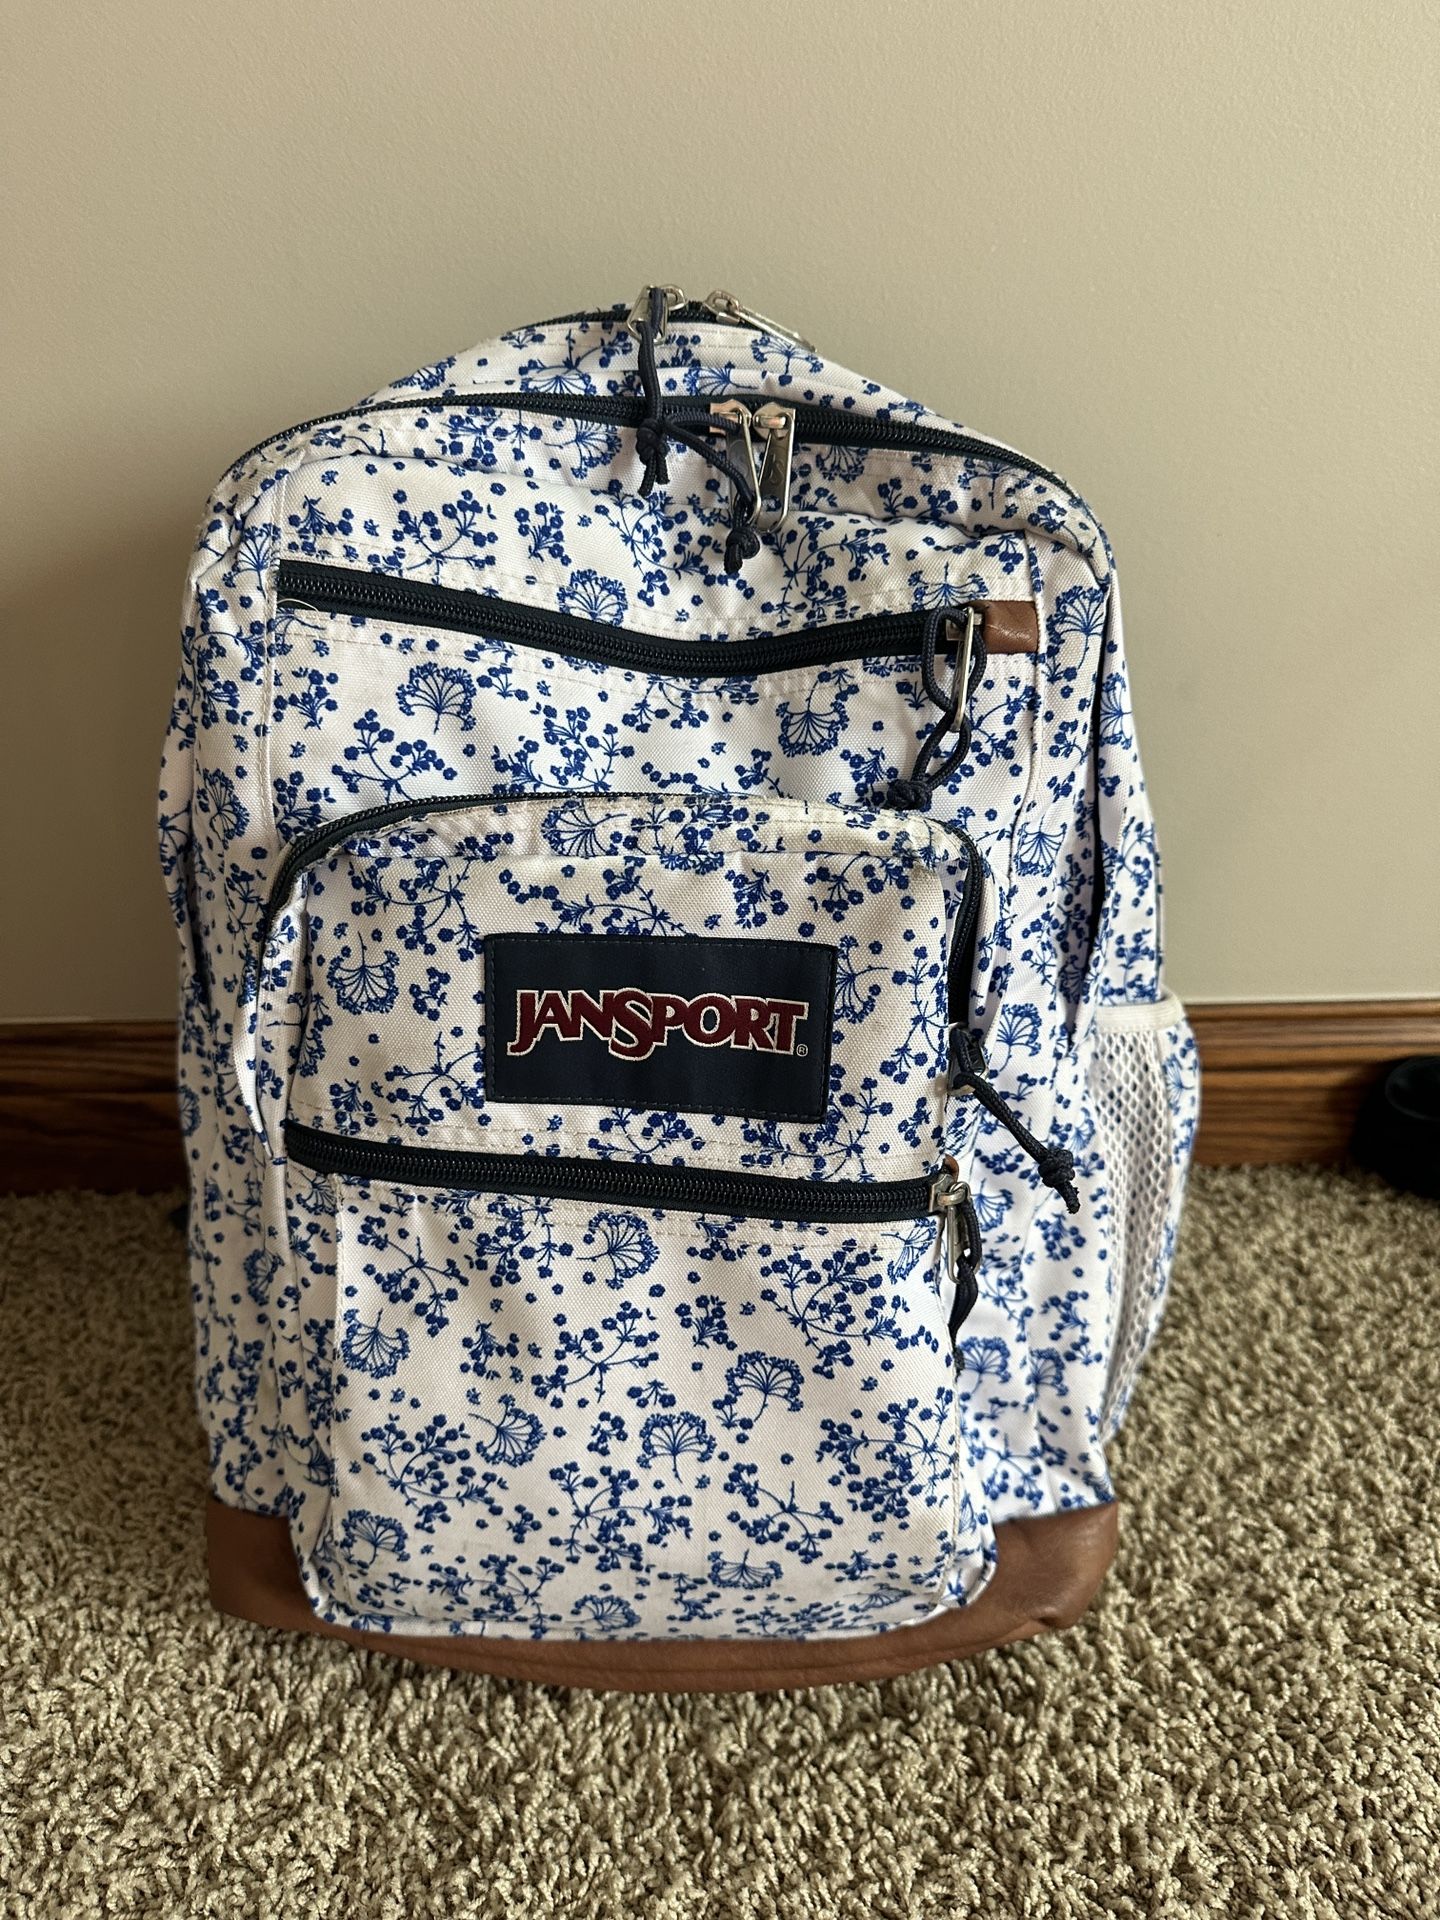 Jansport Blue White Floral Backpack